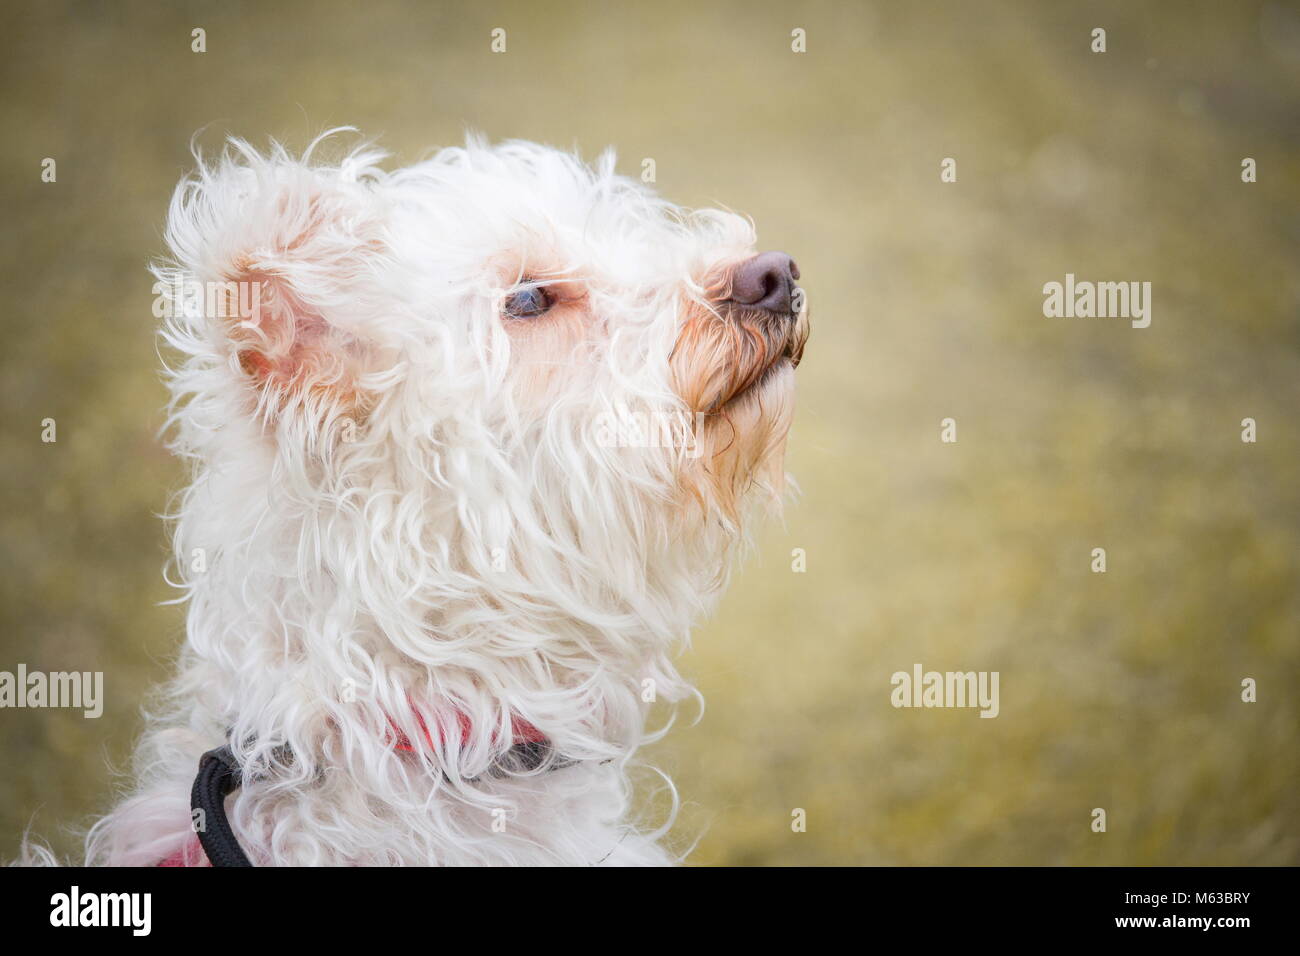 Un ritratto di un piccolo cane bianco con i capelli ricci con un tenero e attento sguardo Foto Stock